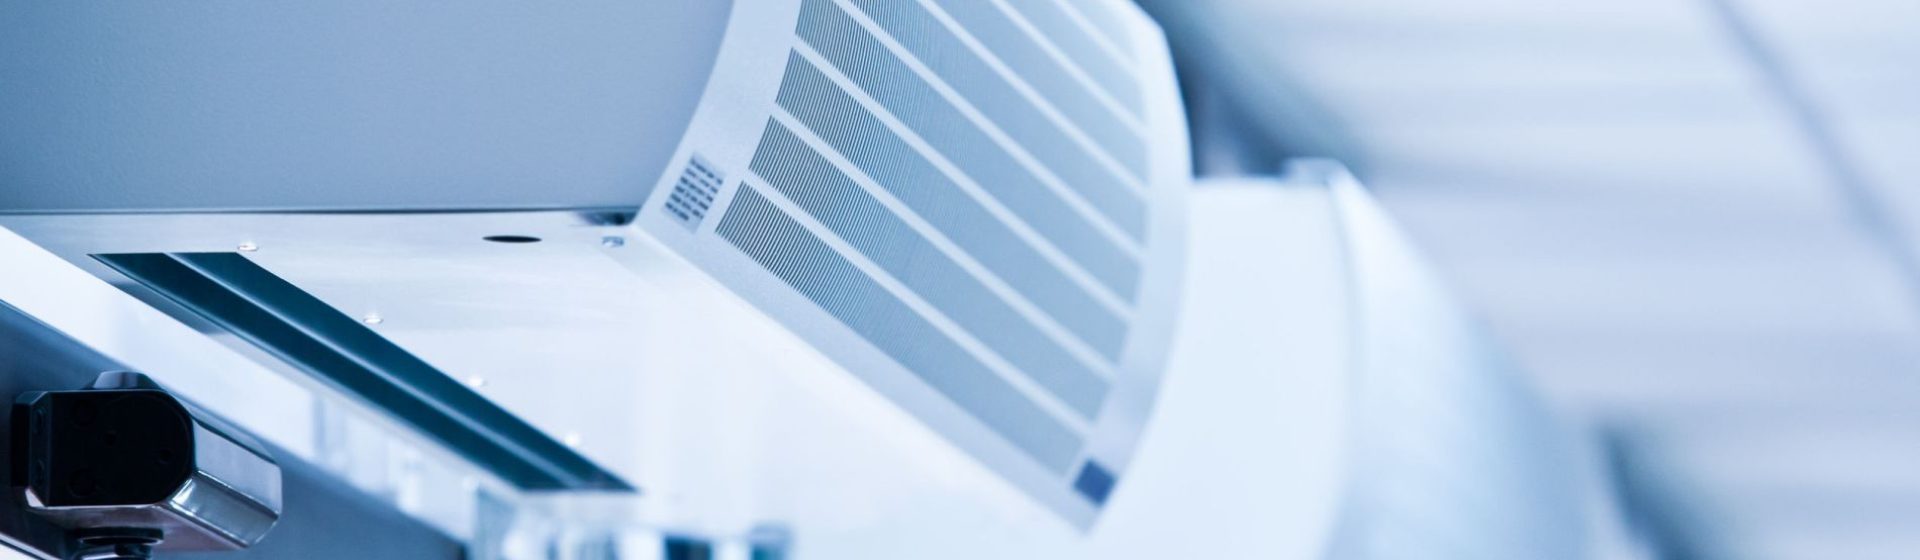 Service d’installation de système de ventilation à Aulnay sous Bois – Pichard Etablissements